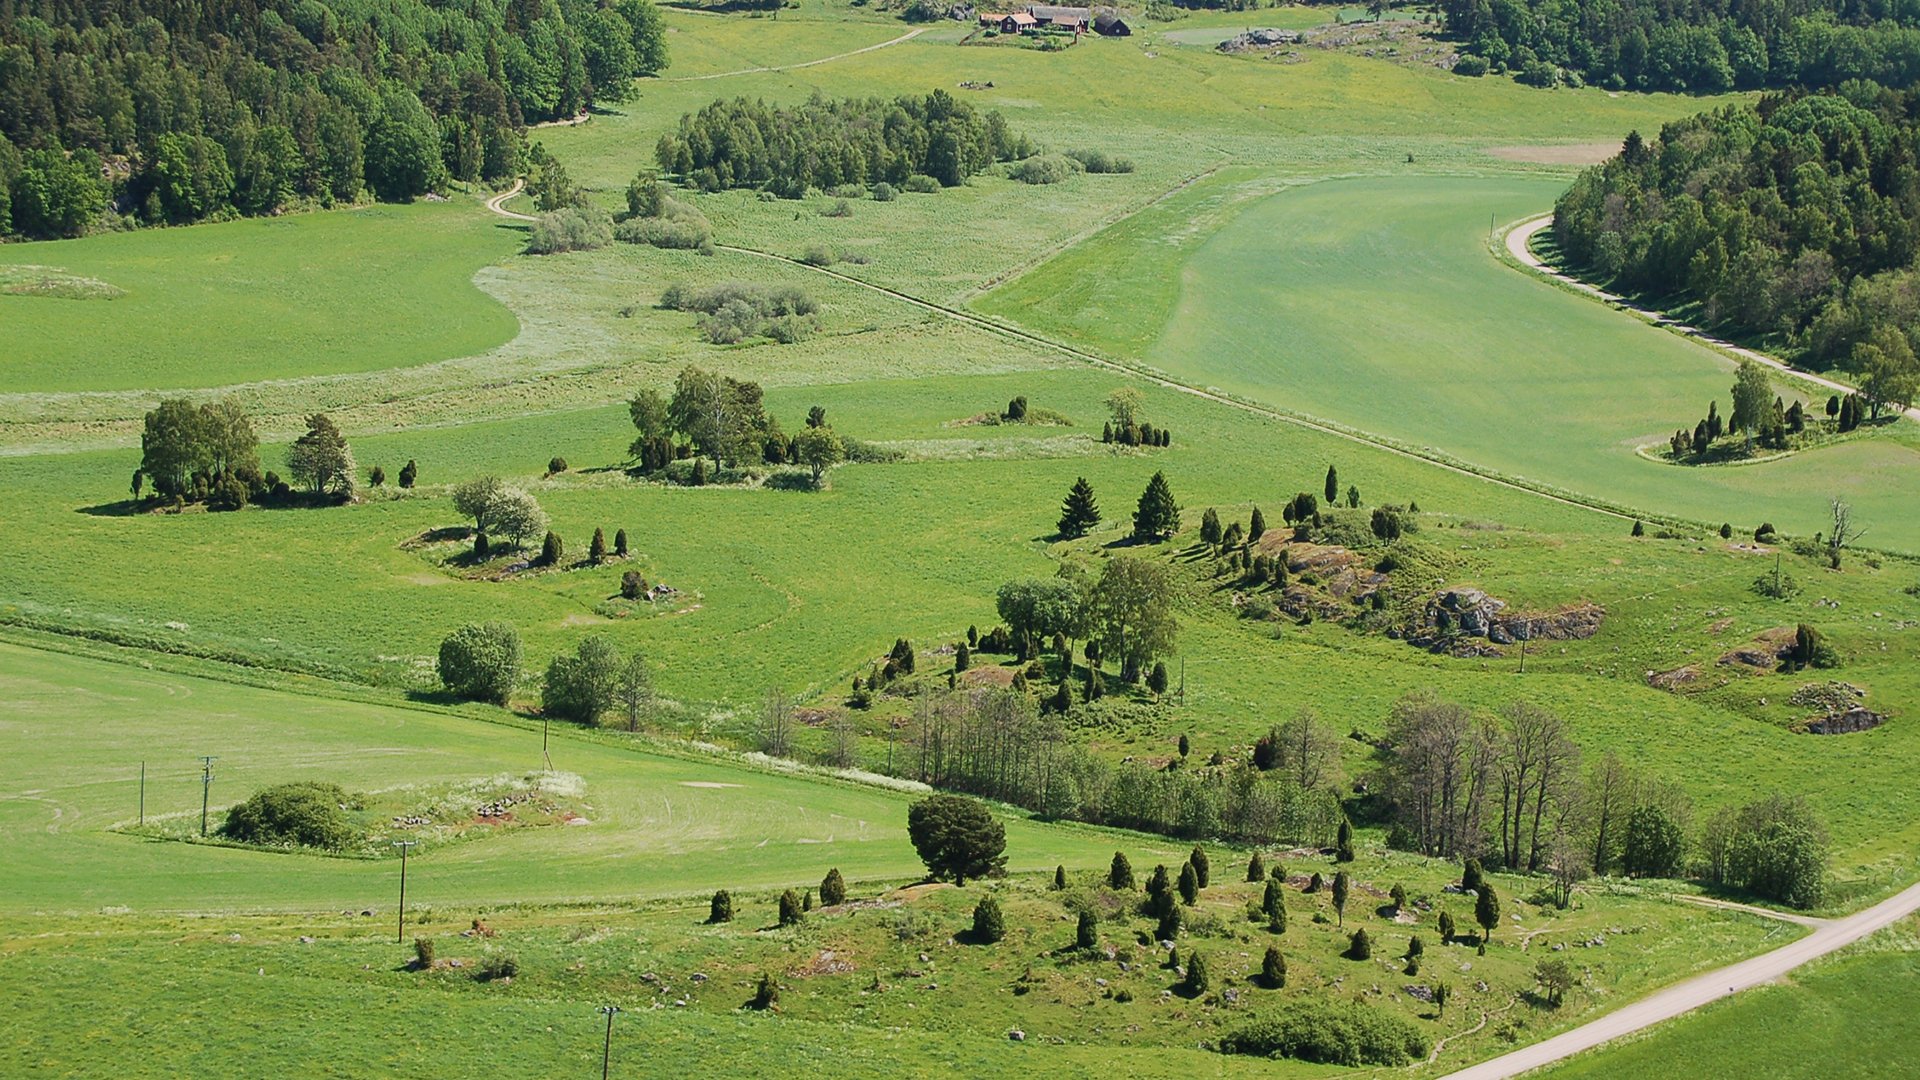 Landskap i Södermanland med naturbetesmark och många småhabitat med gräsmarksfragment så som åkerholmar, vägrenar, skogsbryn samt betad före detta åker.